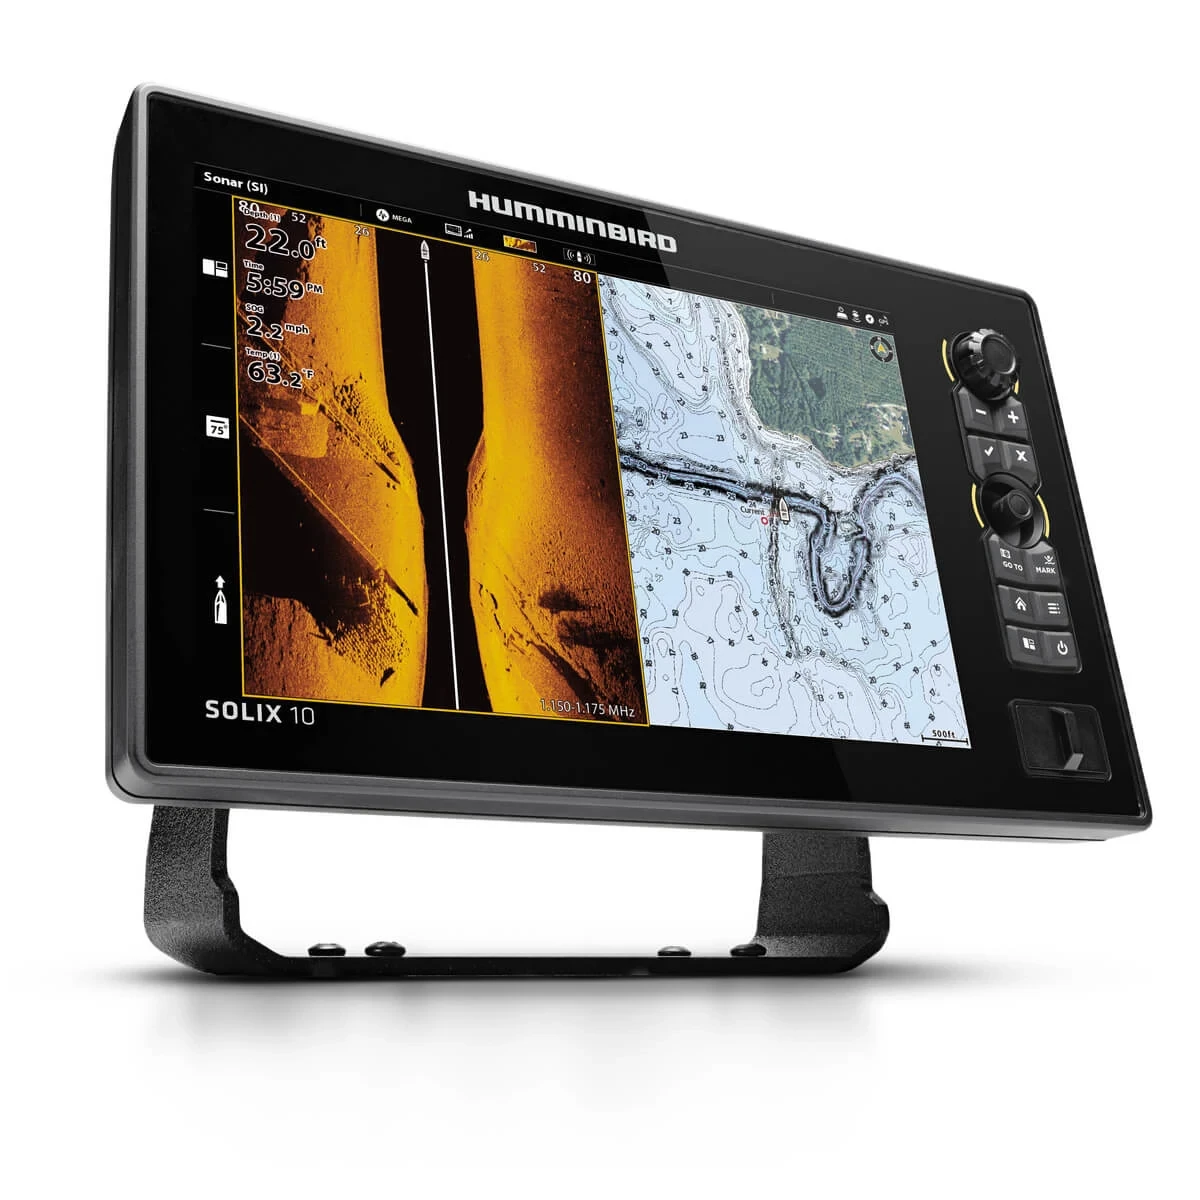 SOLIX 10 CHIRP MEGA Side Imaging GPS G2 front-side Side Imaging view